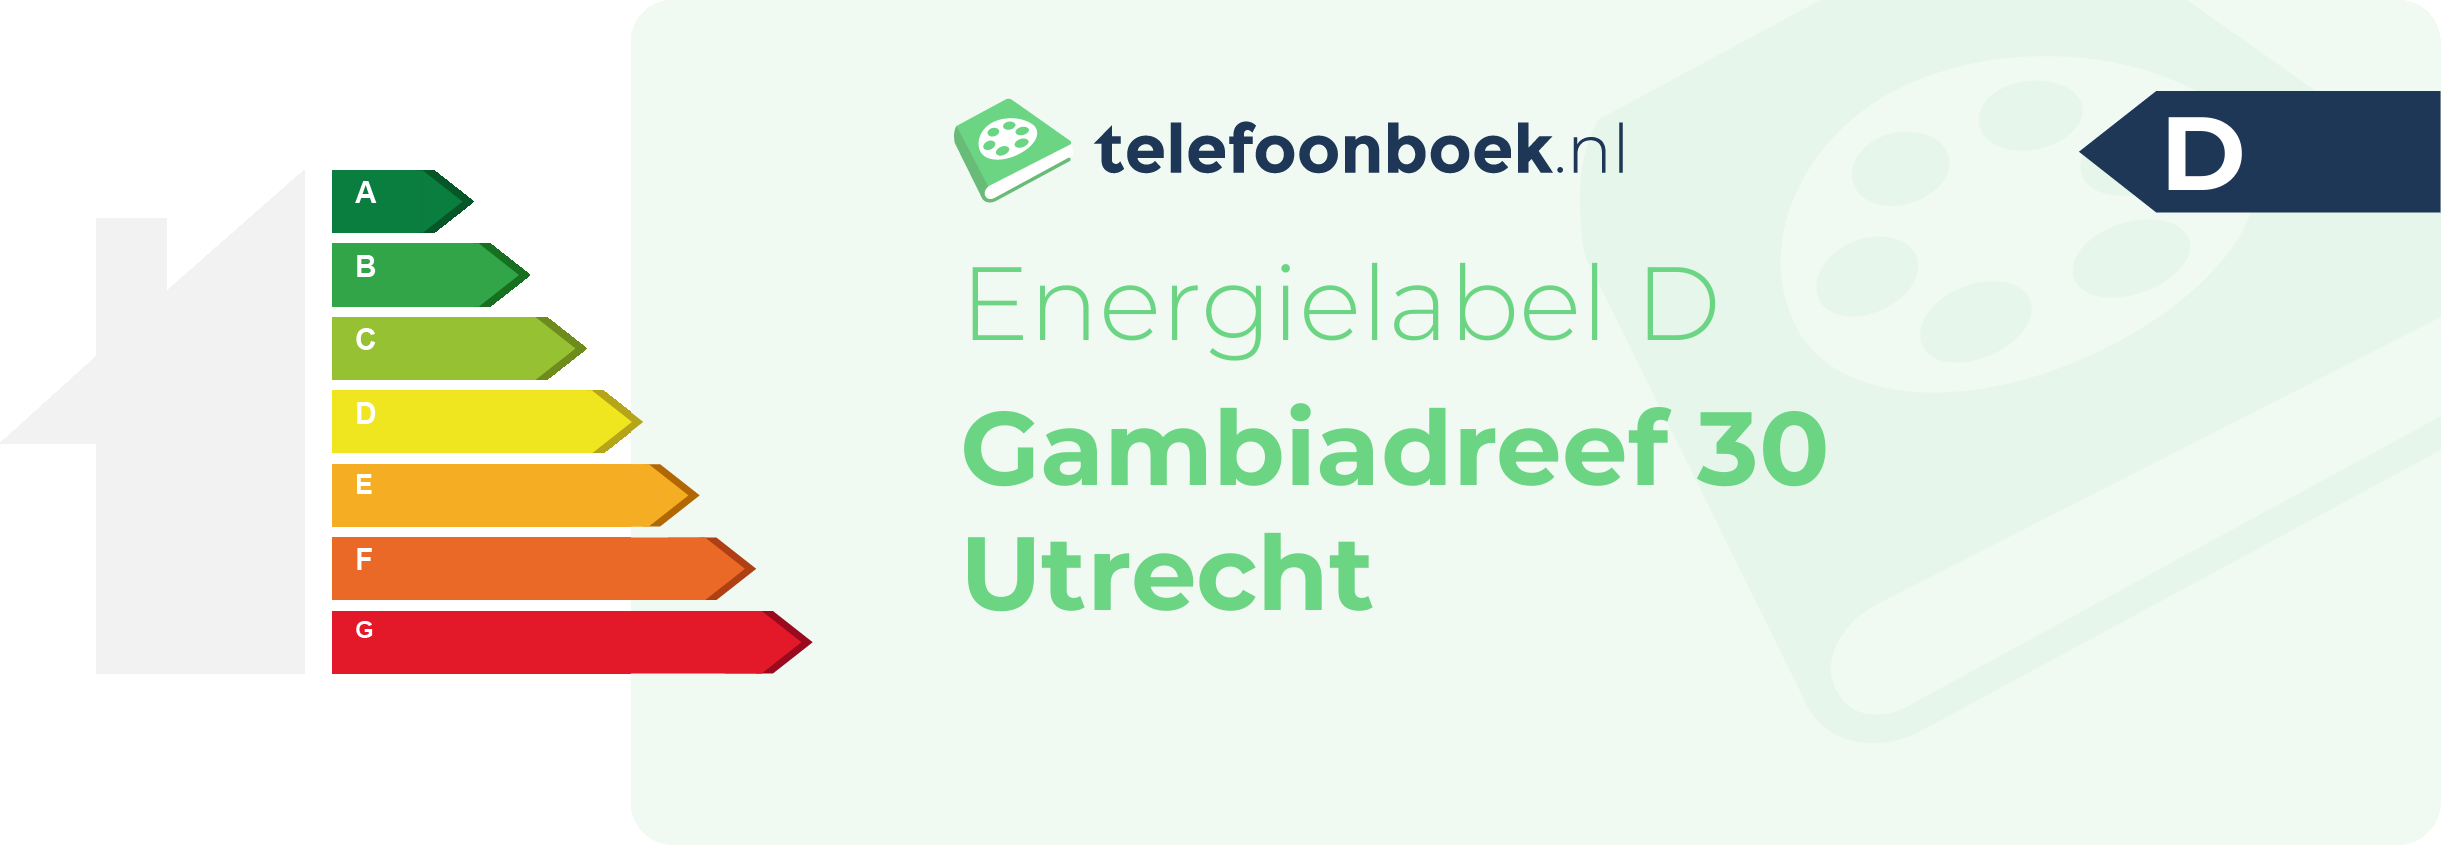 Energielabel Gambiadreef 30 Utrecht